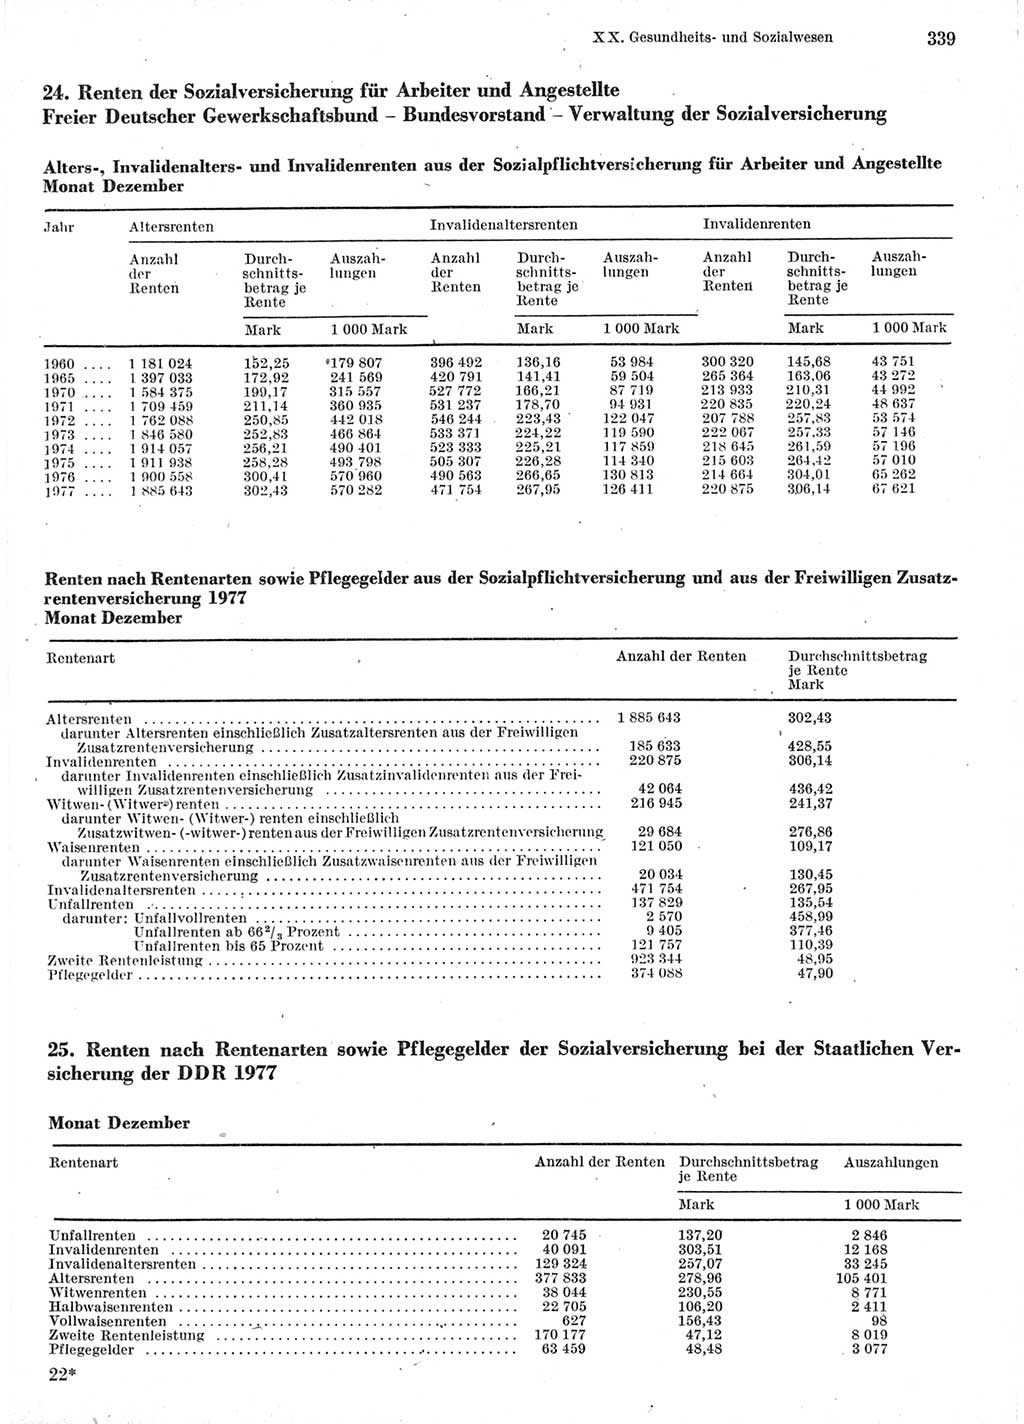 Statistisches Jahrbuch der Deutschen Demokratischen Republik (DDR) 1978, Seite 339 (Stat. Jb. DDR 1978, S. 339)